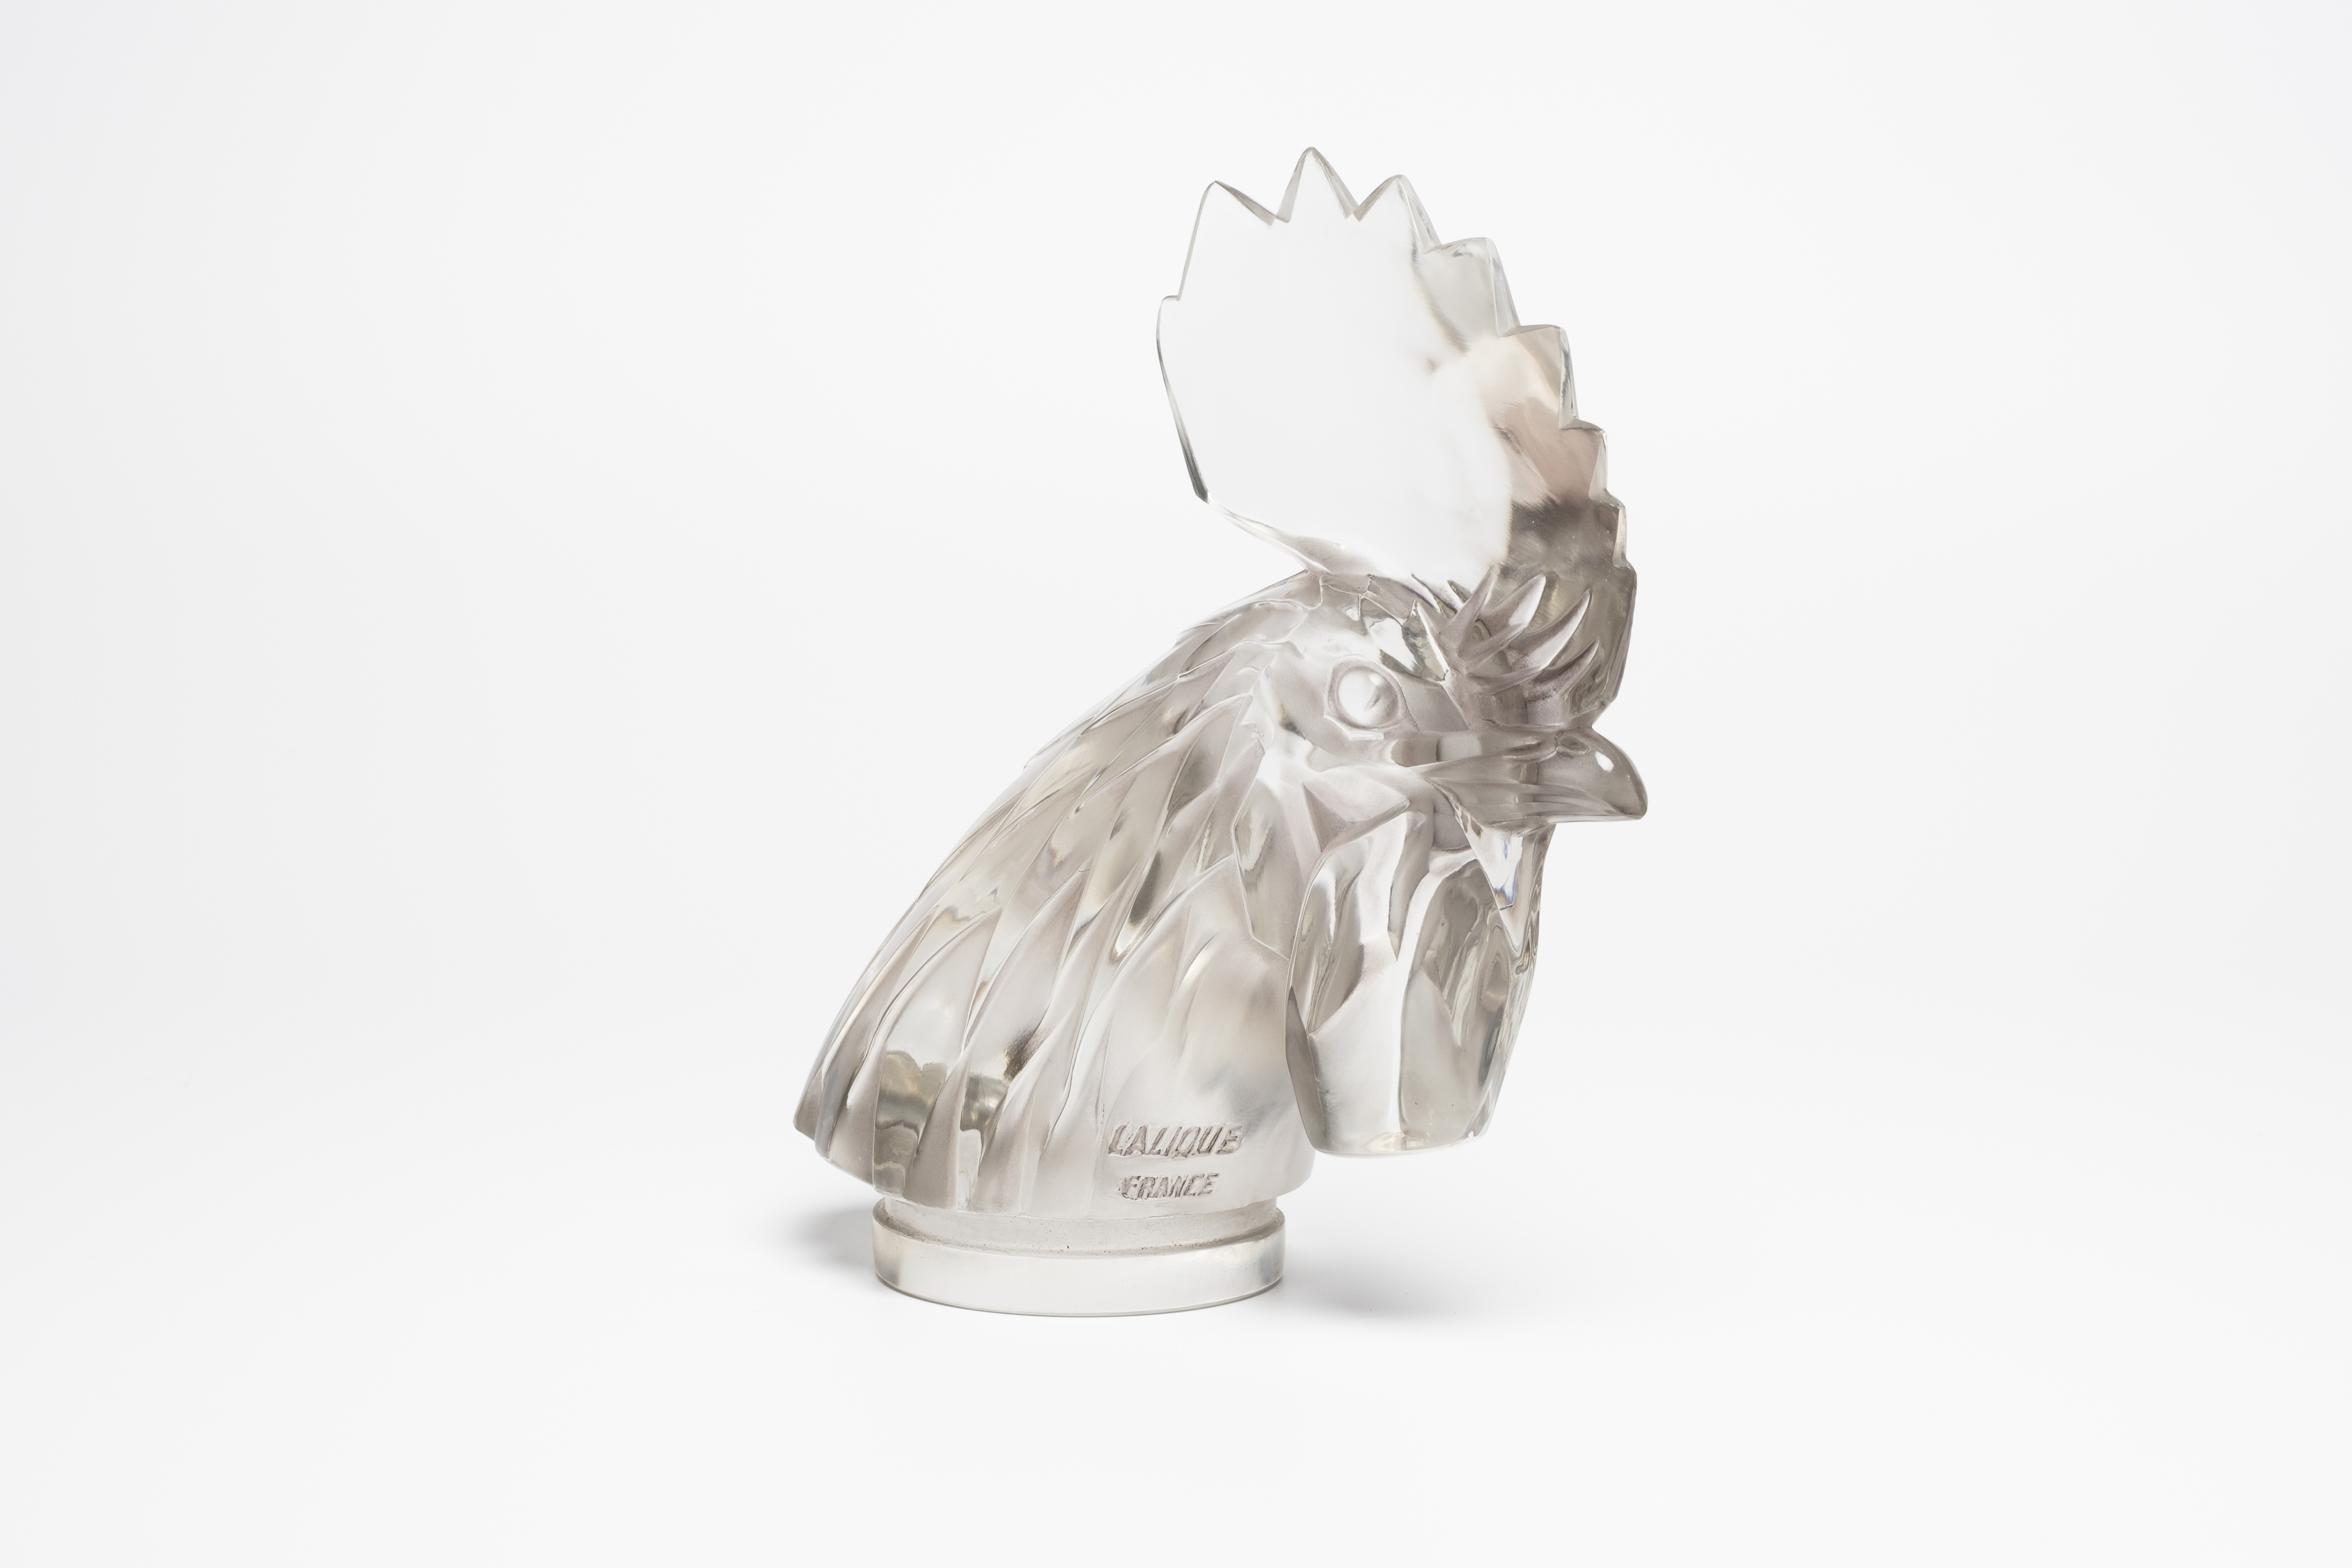 Lalique Tete de Coq Car Mascot